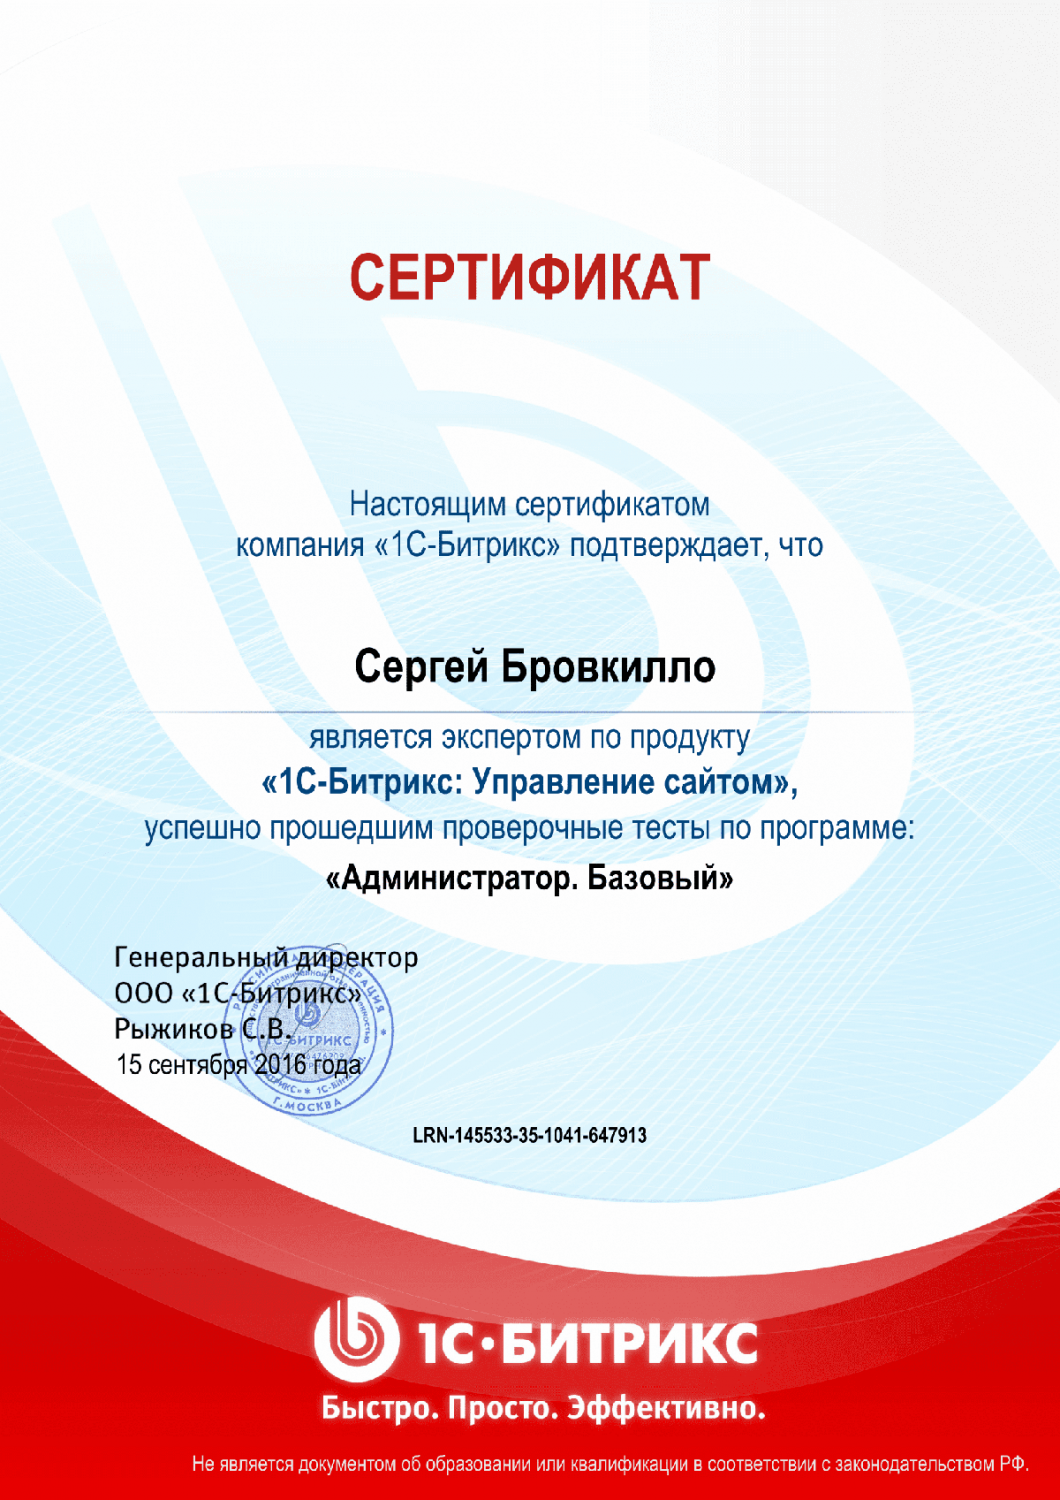 Сертификат эксперта по программе "Администратор. Базовый" в Обнинска